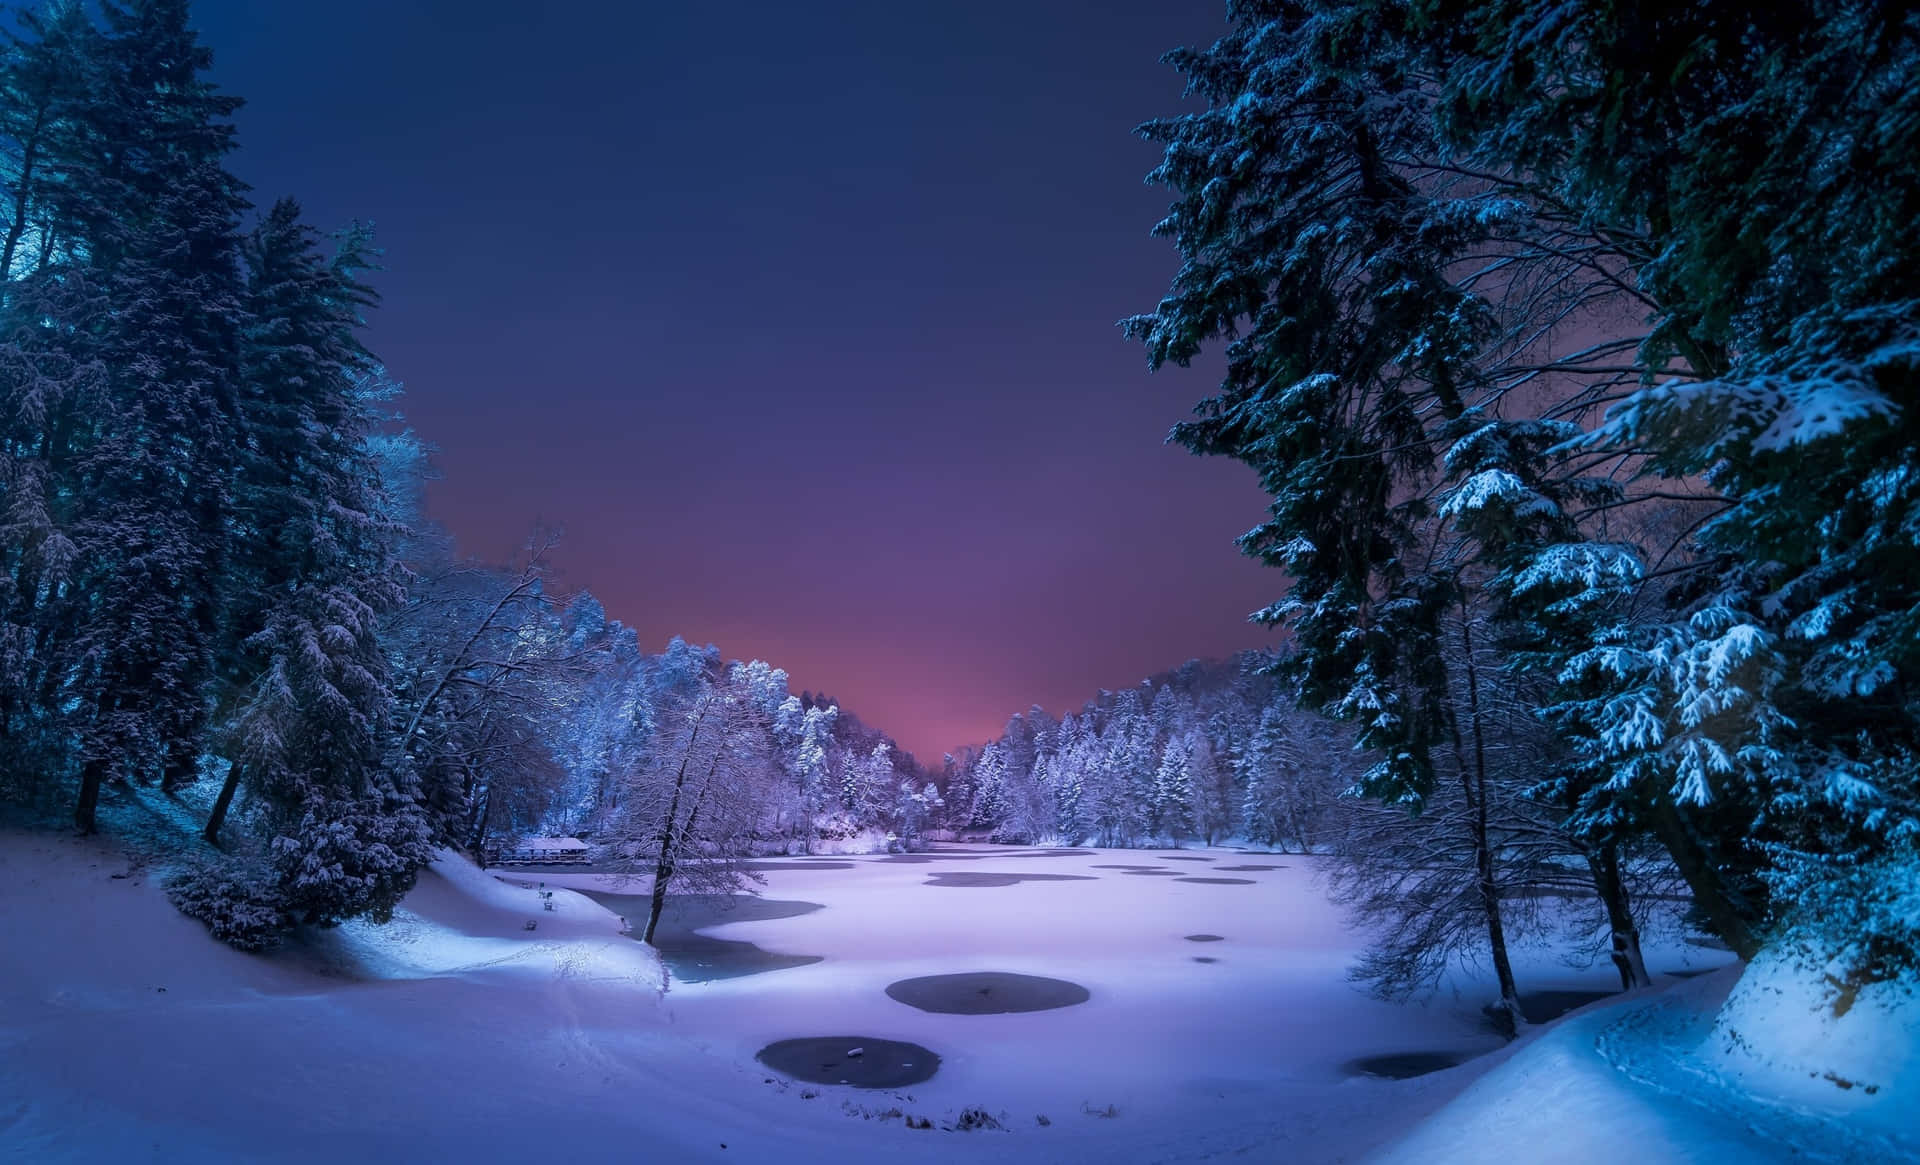 flakesEn sne dækket sø om natten med træer og snefnug Wallpaper